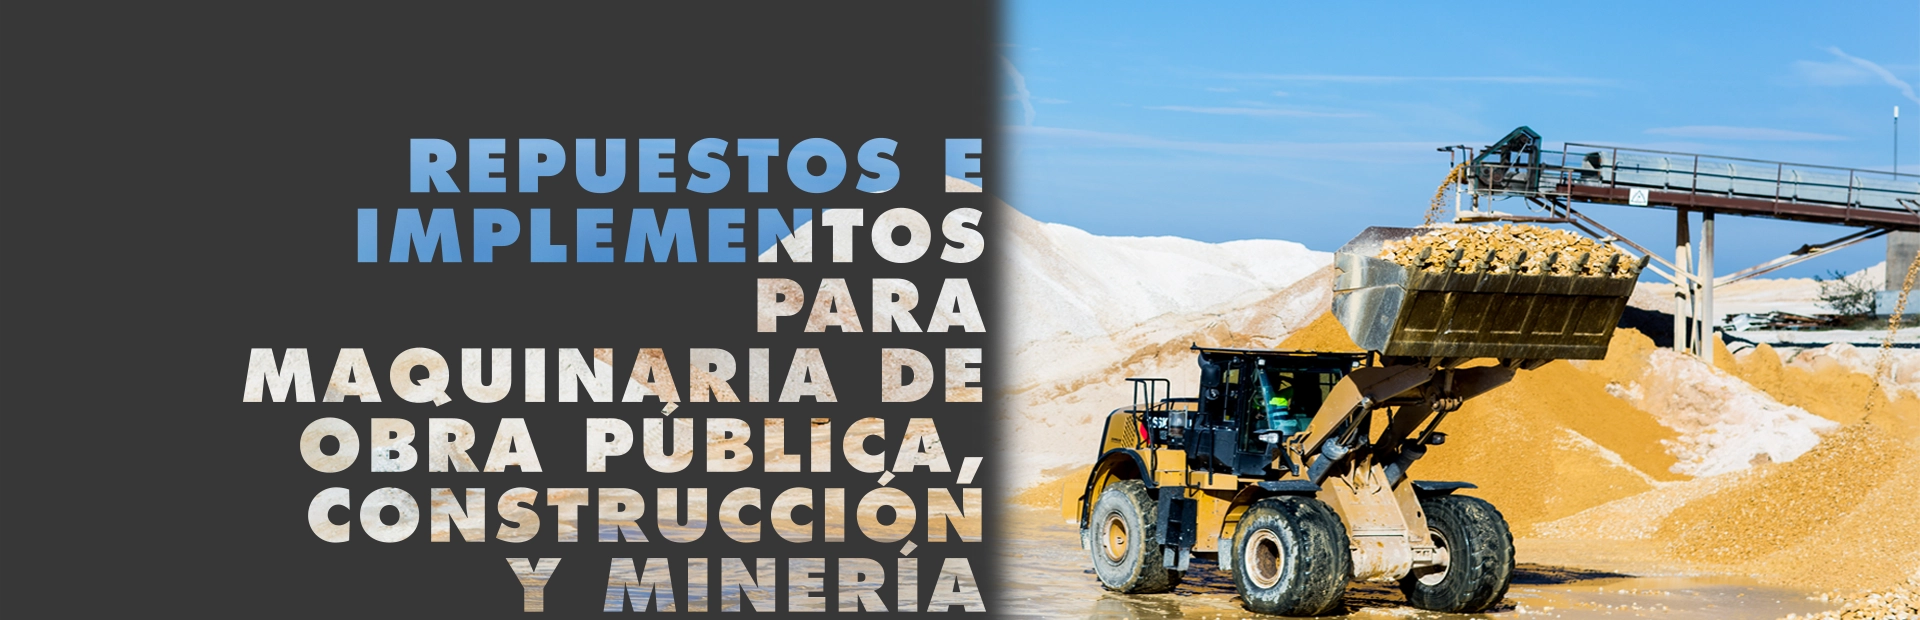 Repuesto e implementos para maquinaria de obra pública, construcción y mineria